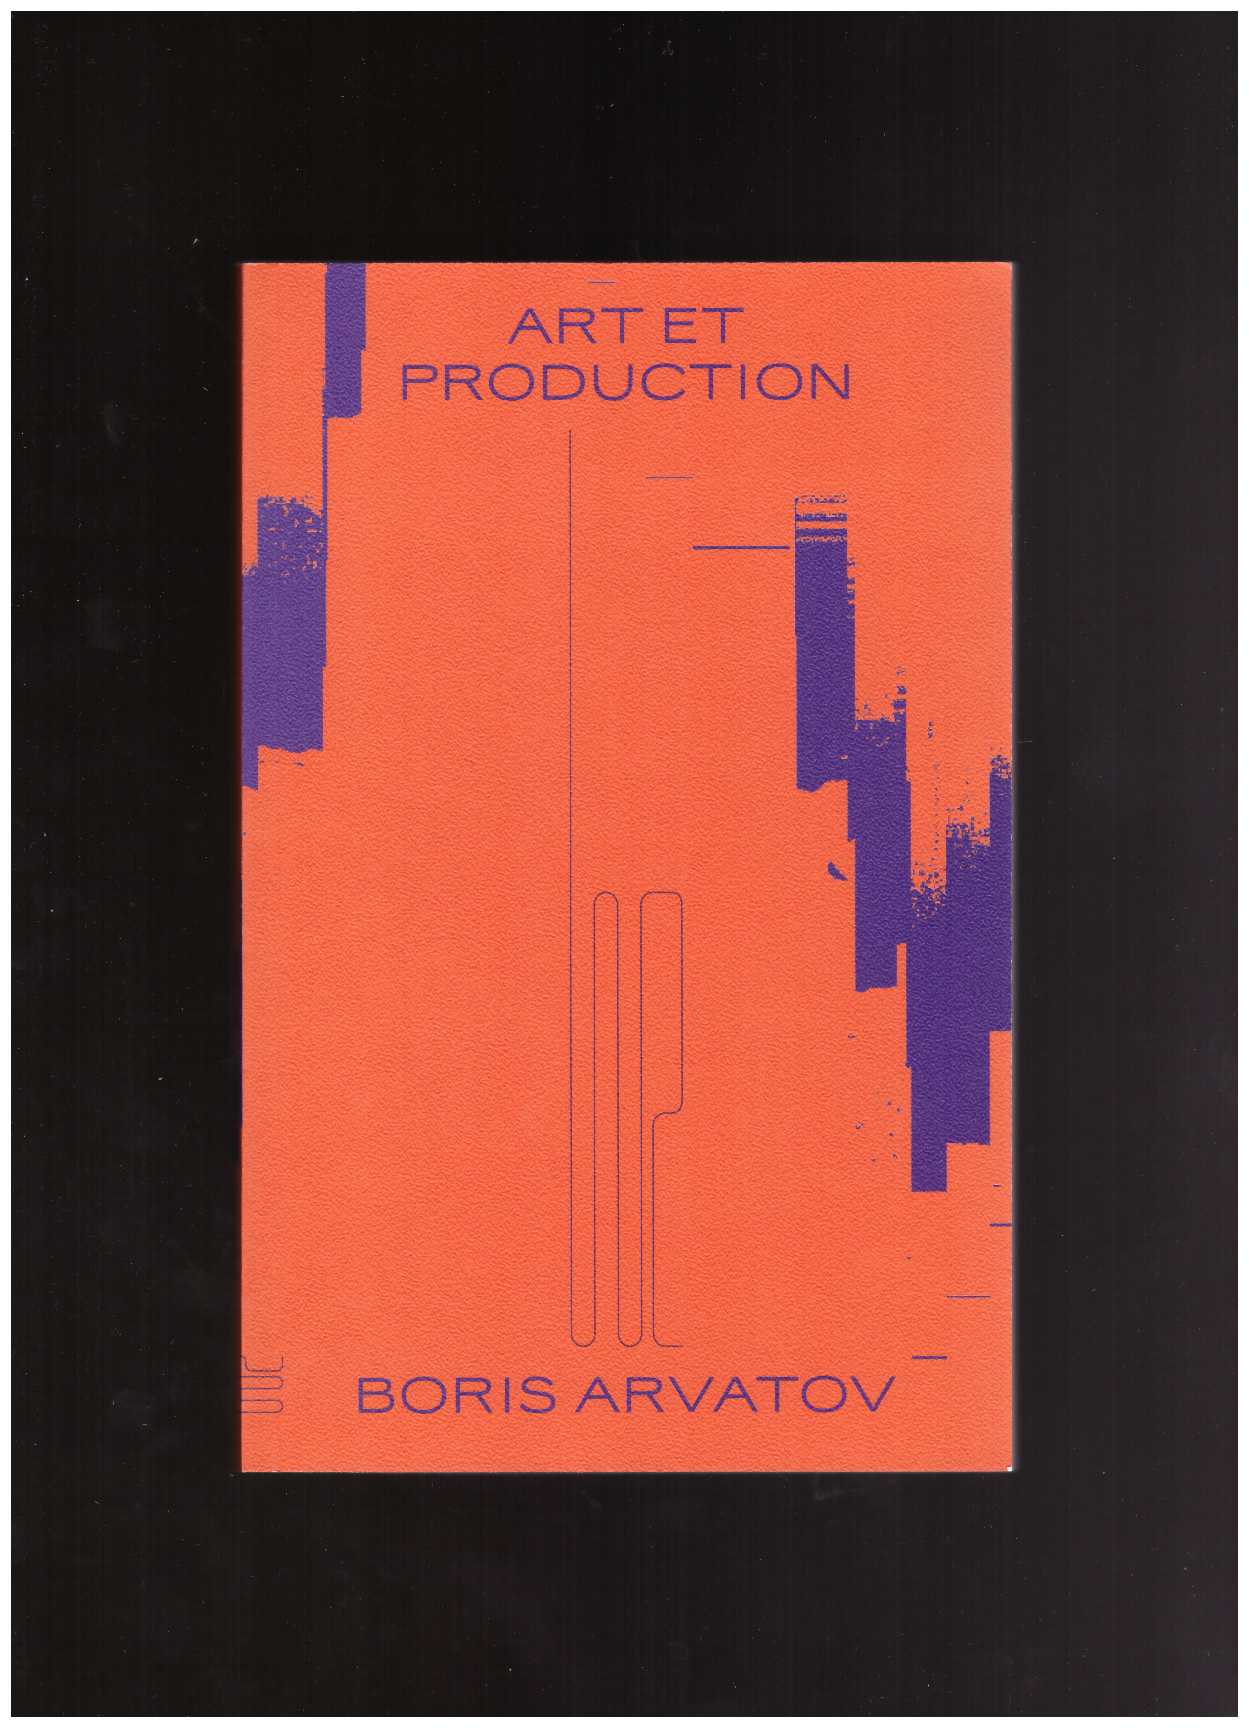 BORIS, Arvatov - Art et Production